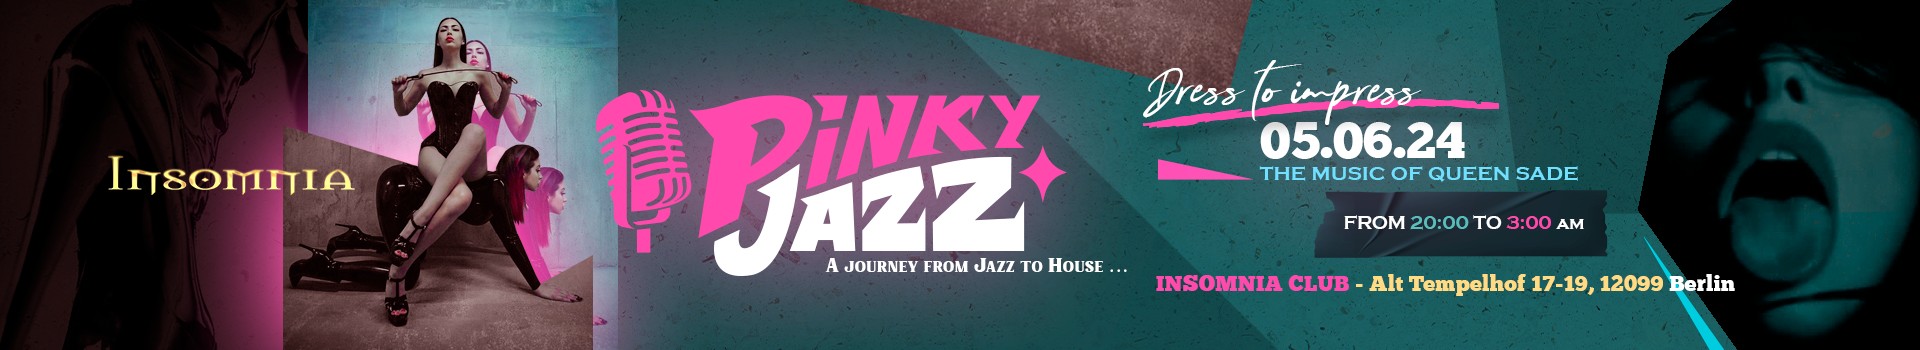 Pinky Jazz - Un voyage du jazz à la house